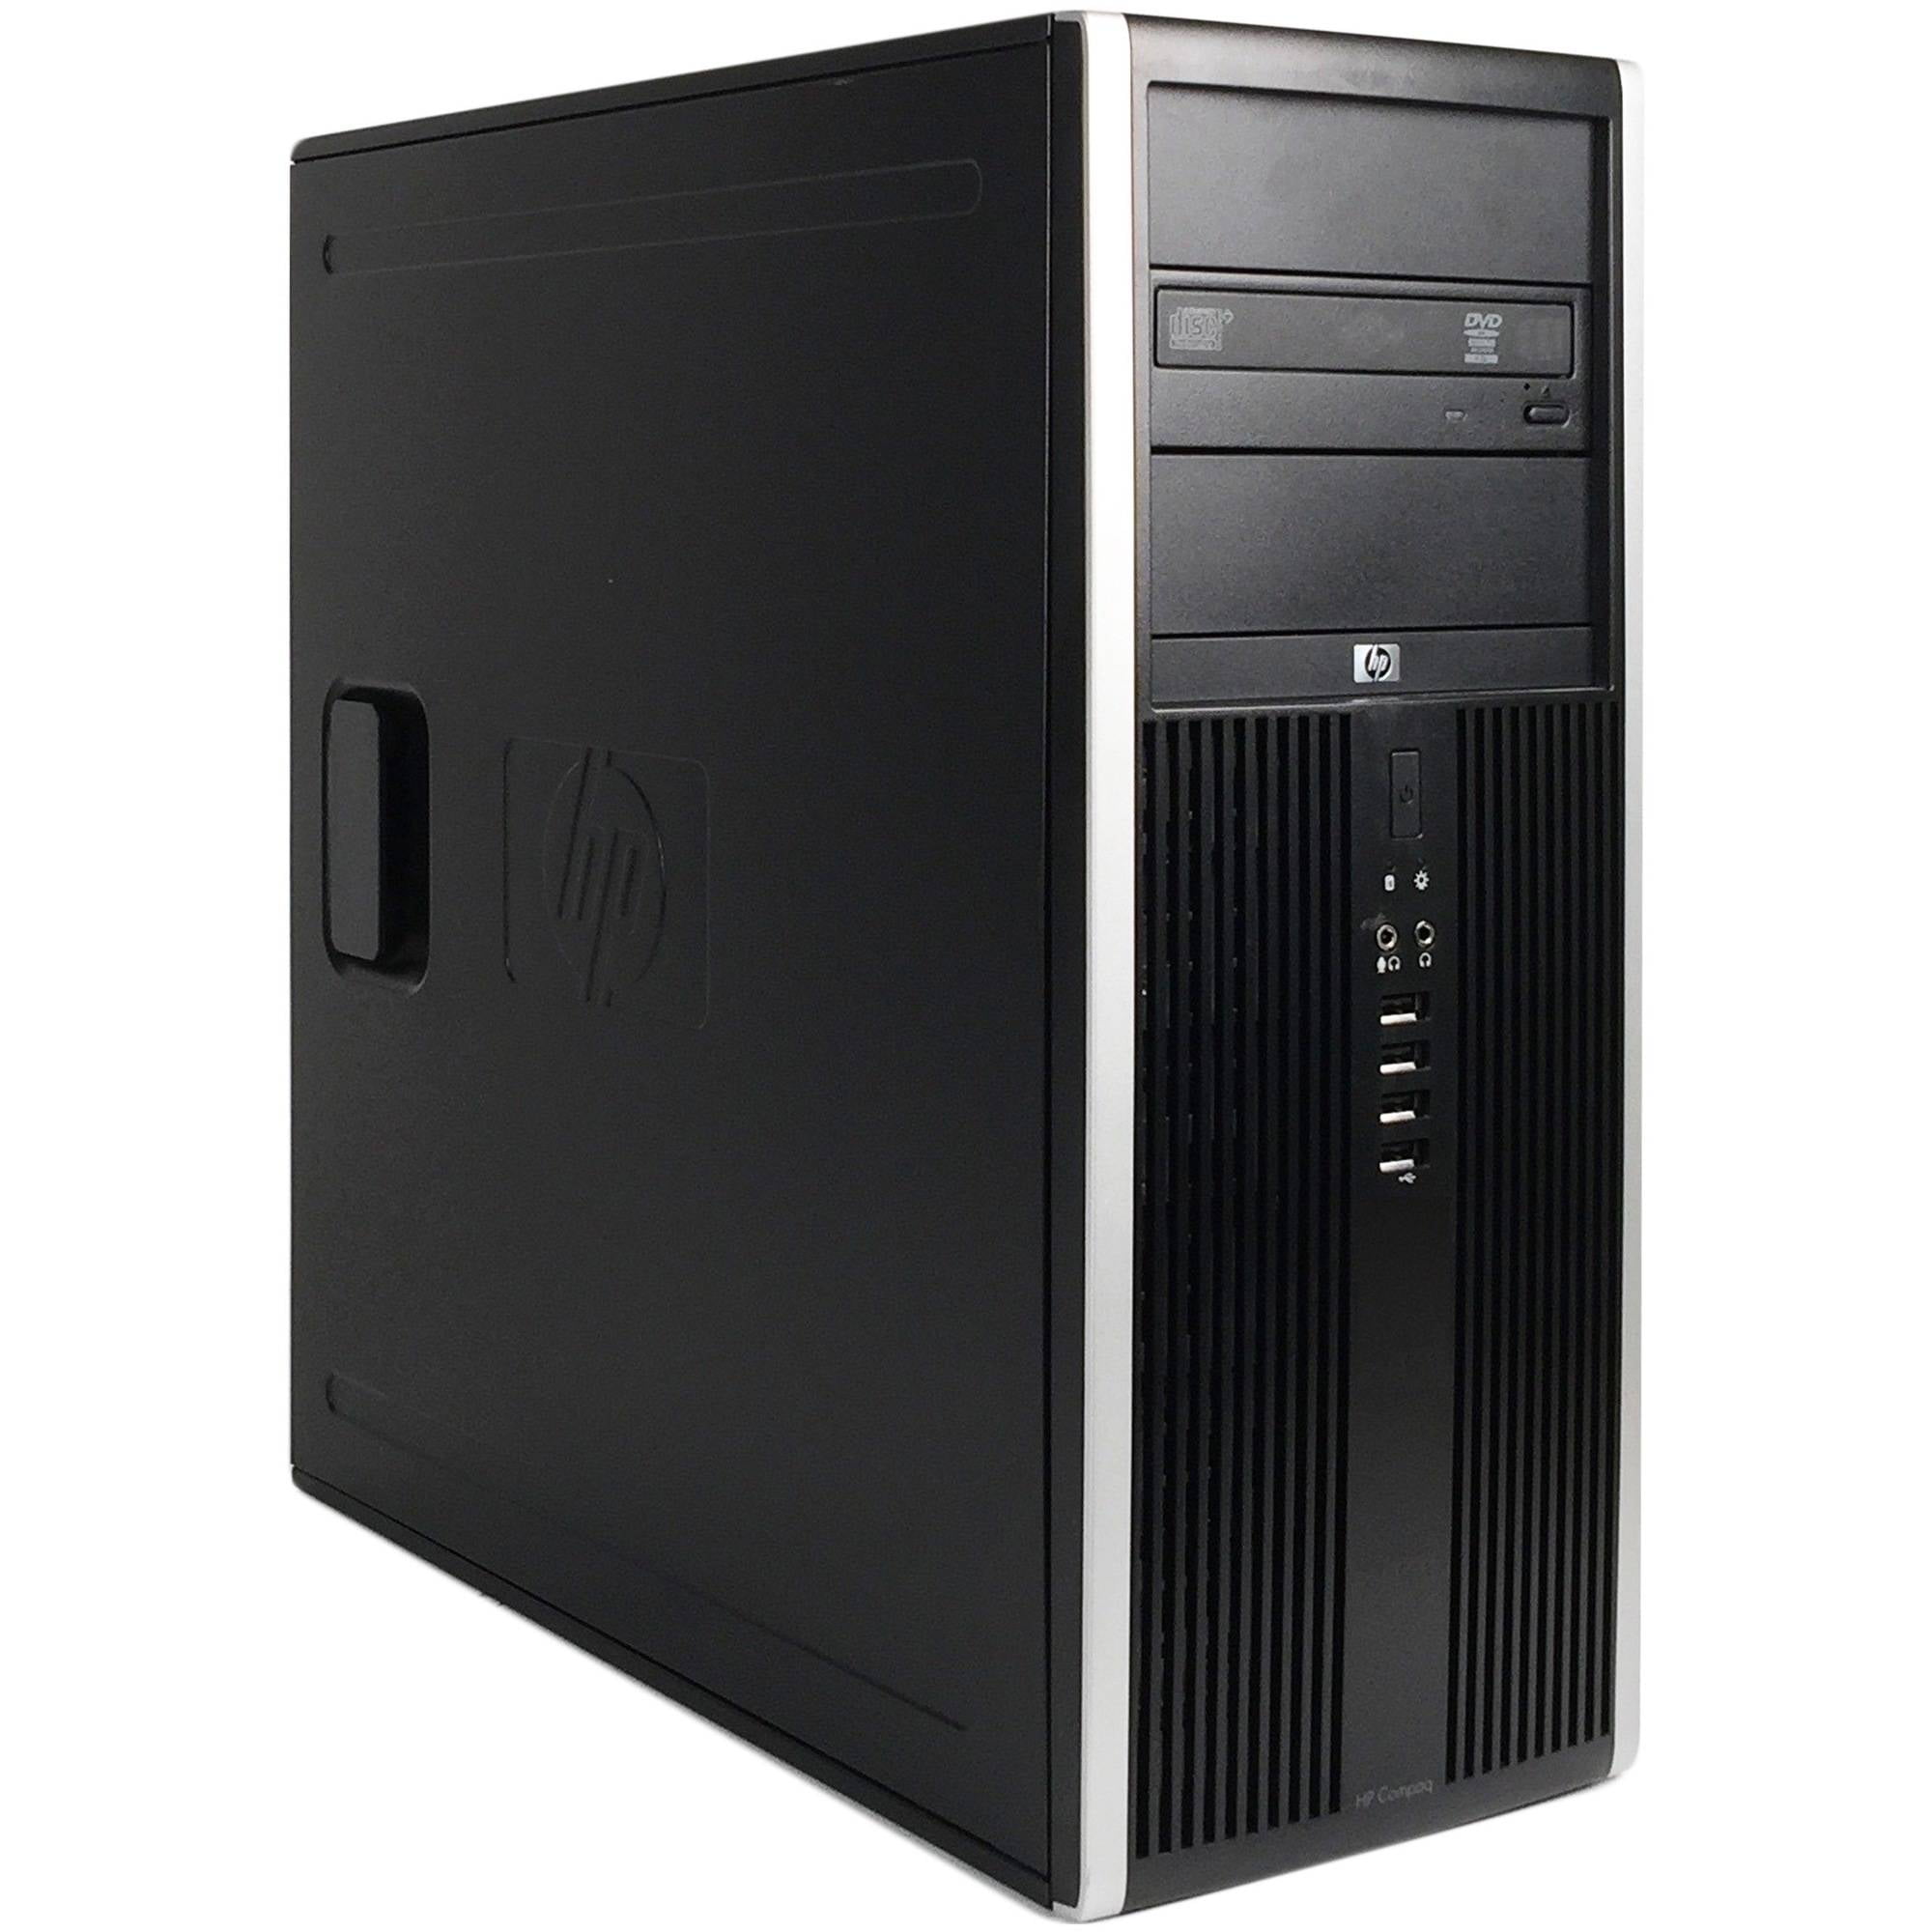 hp desktop computer 6200 pro intel core i5 2400 review